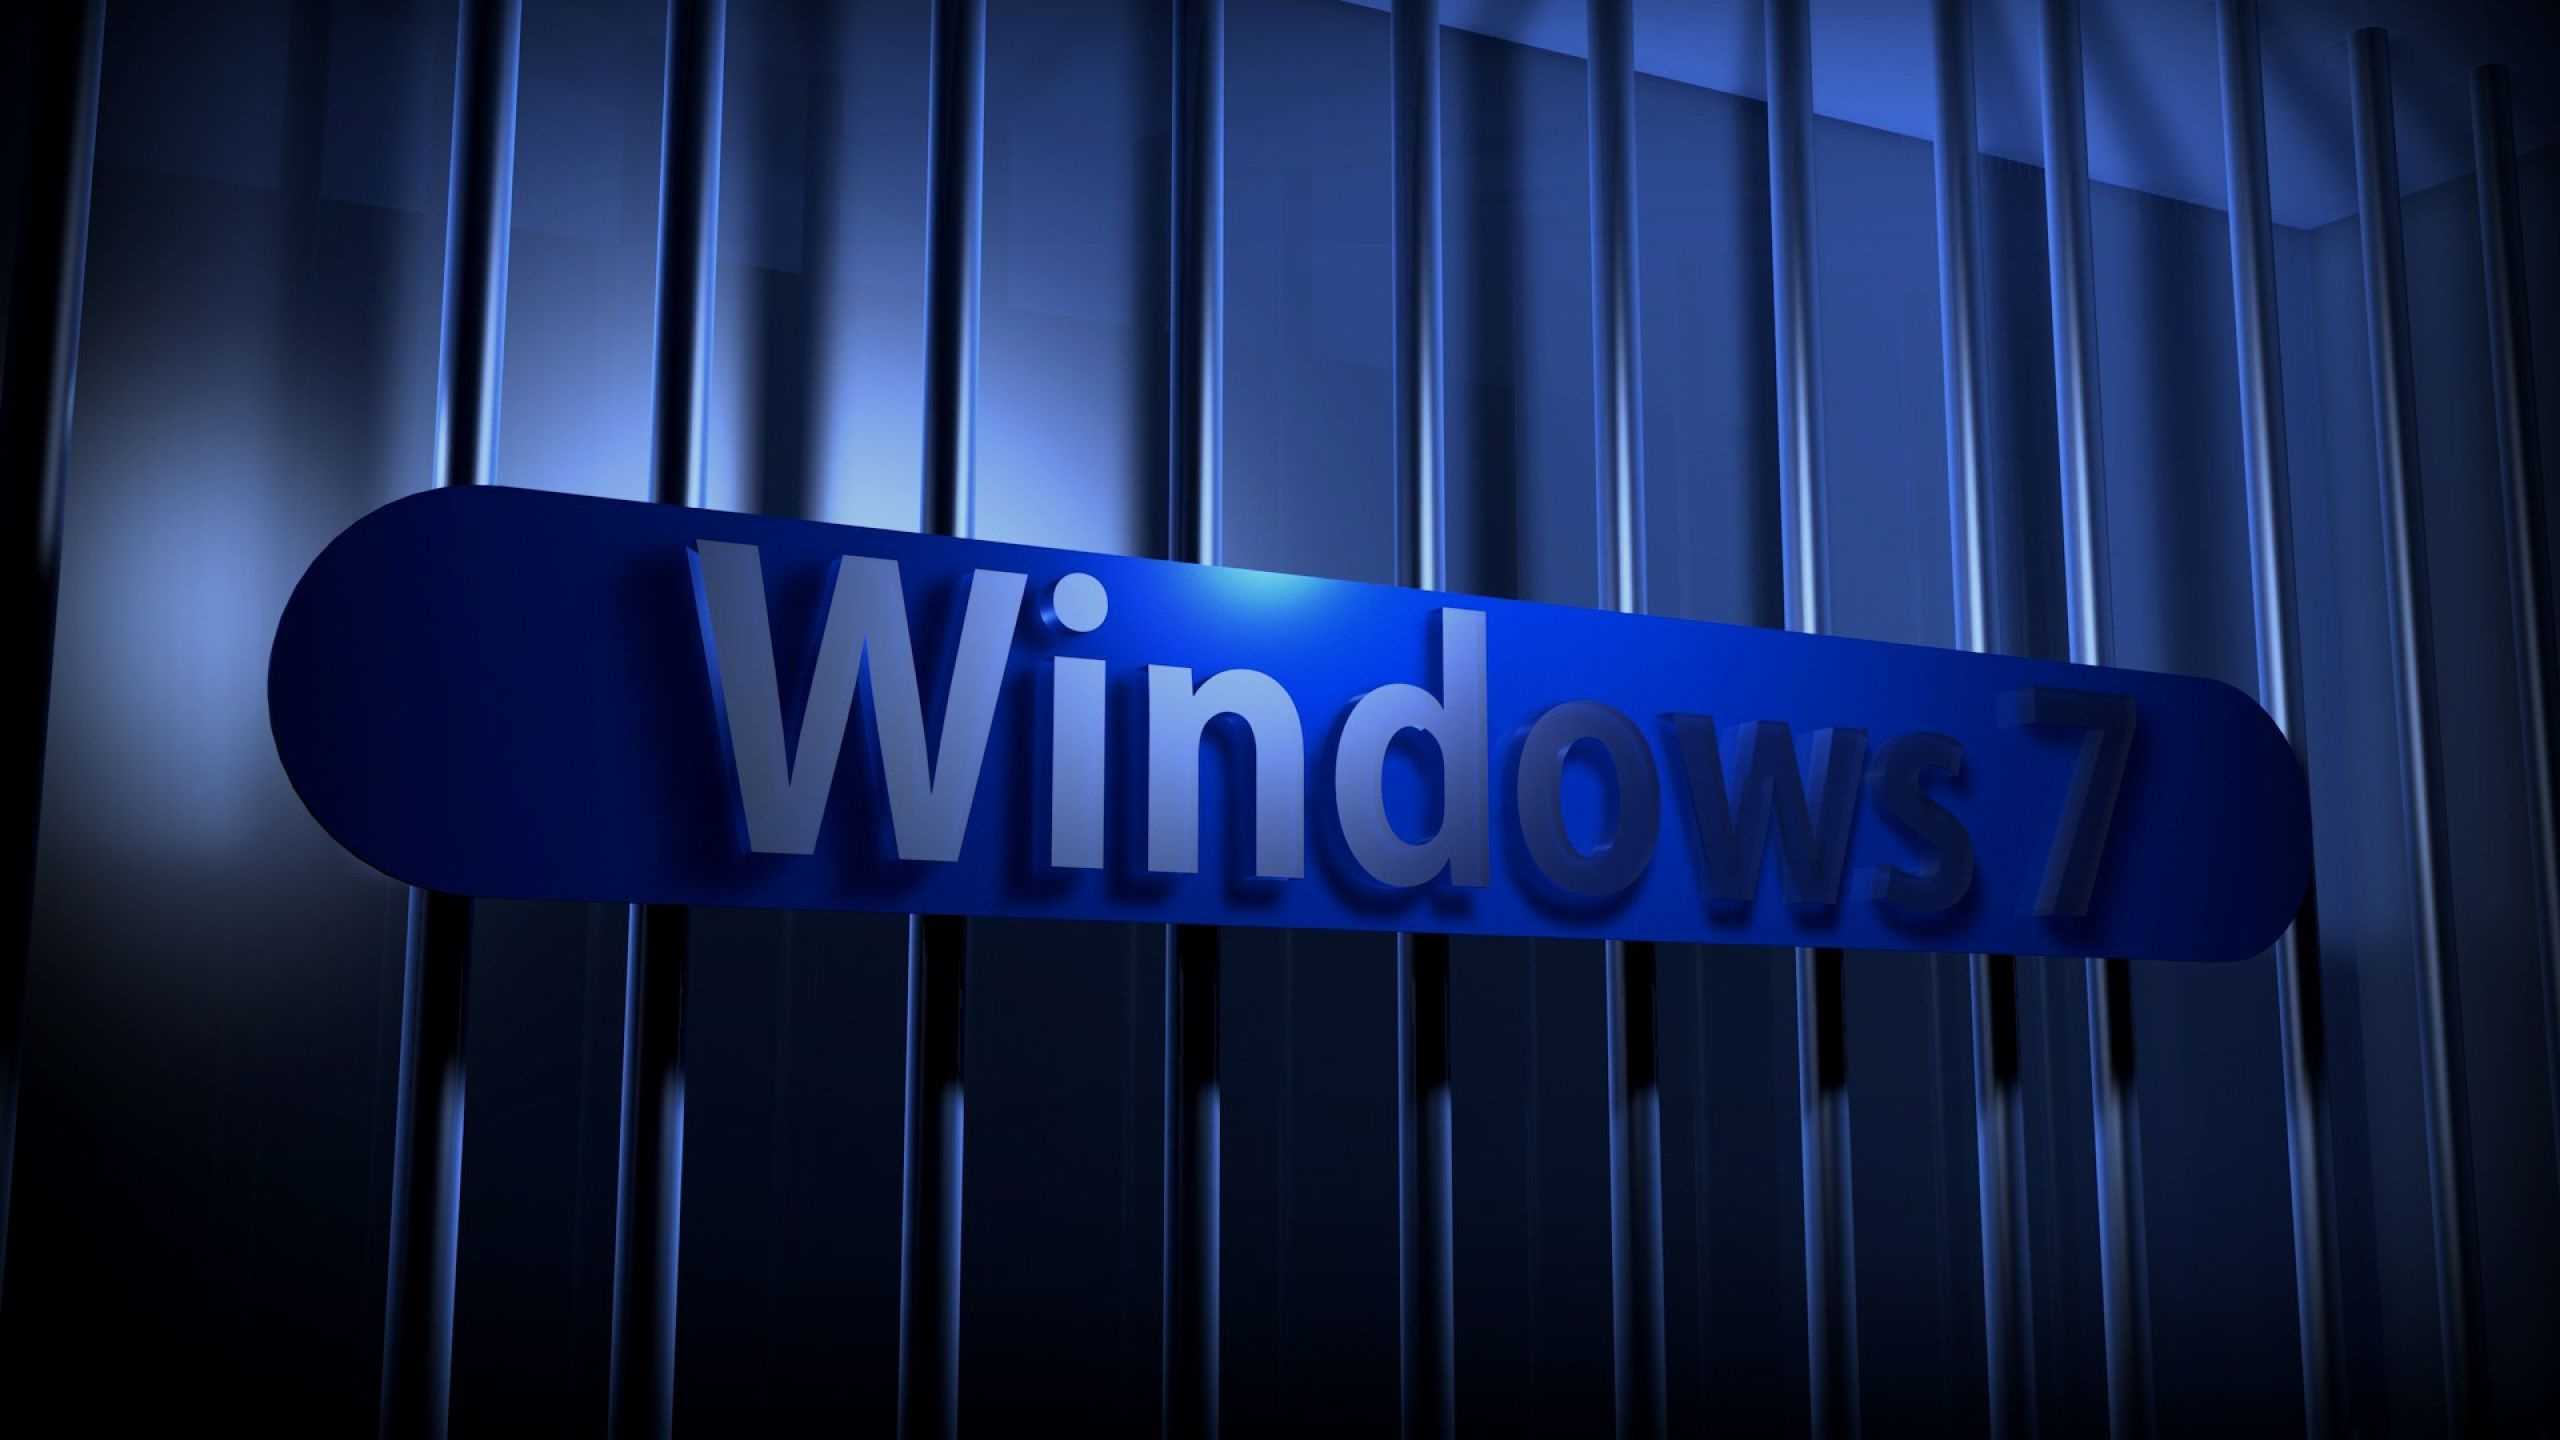 Windows7, 光, 电蓝色的, Windows10, Microsoft Windows 壁纸 2560x1440 允许